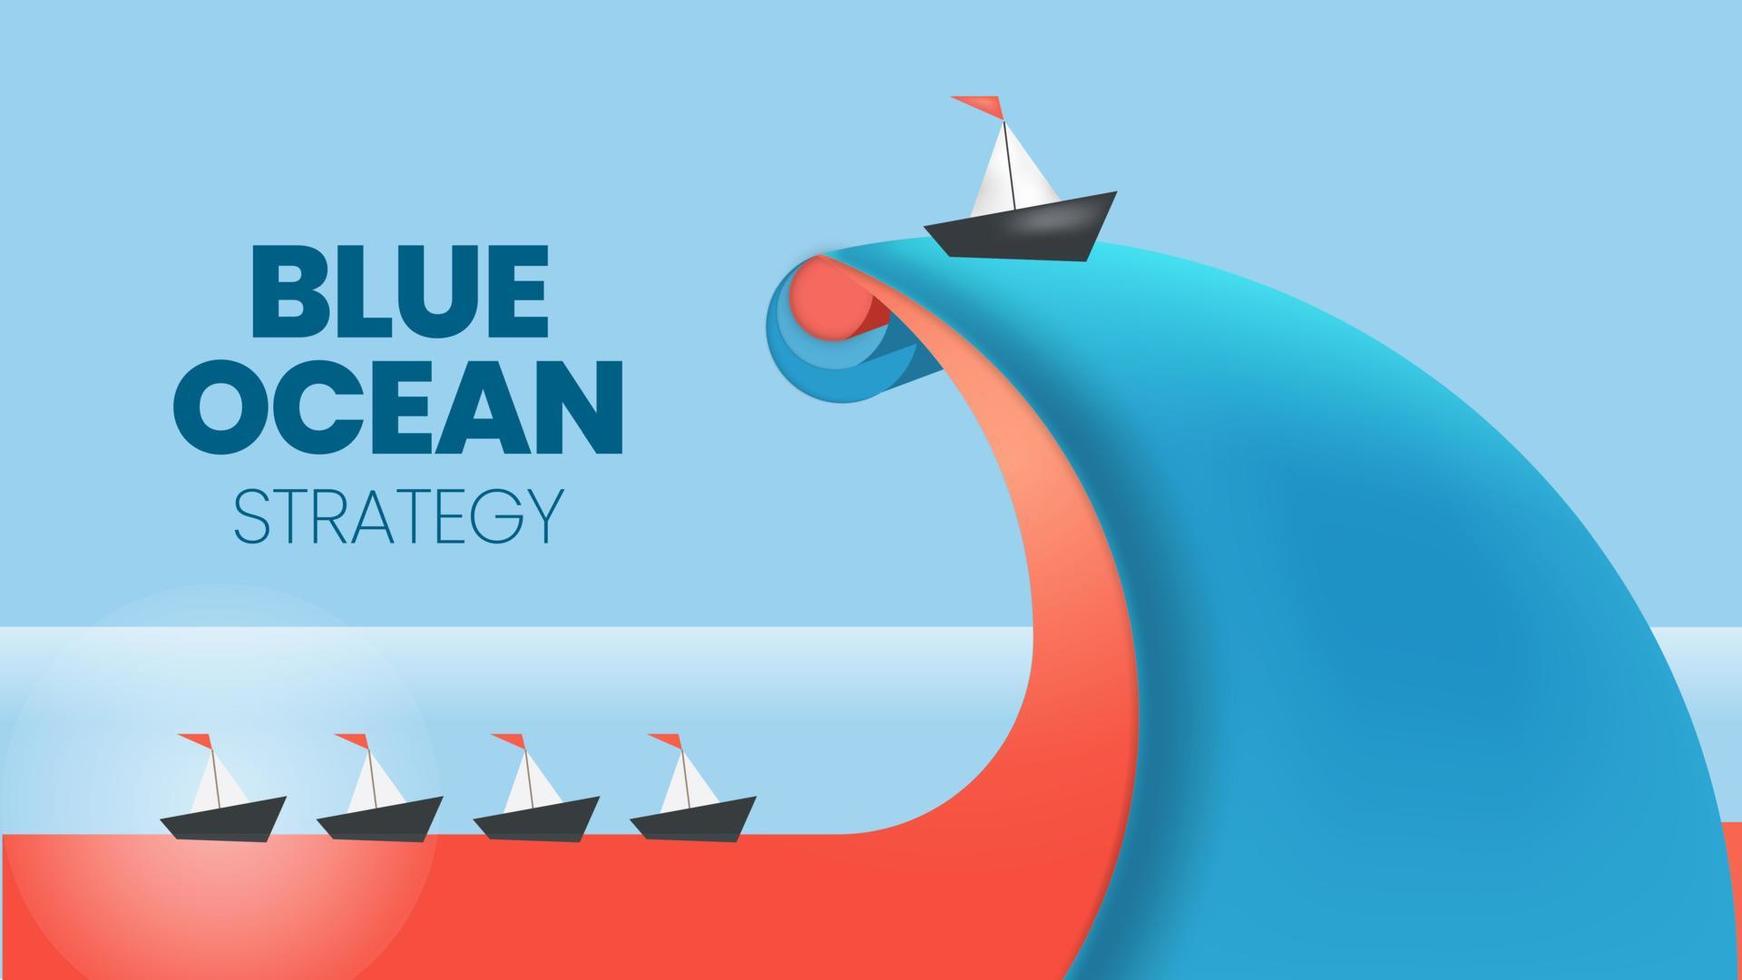 Die Präsentation des Strategiekonzepts Blue Ocean ist ein Vektor-Infografik-Element des Nischenmarketings. das rote meer hat blutige massenkonkurrenz und die blaue seite der pioniere hat mehr vorteile und möglichkeiten vektor